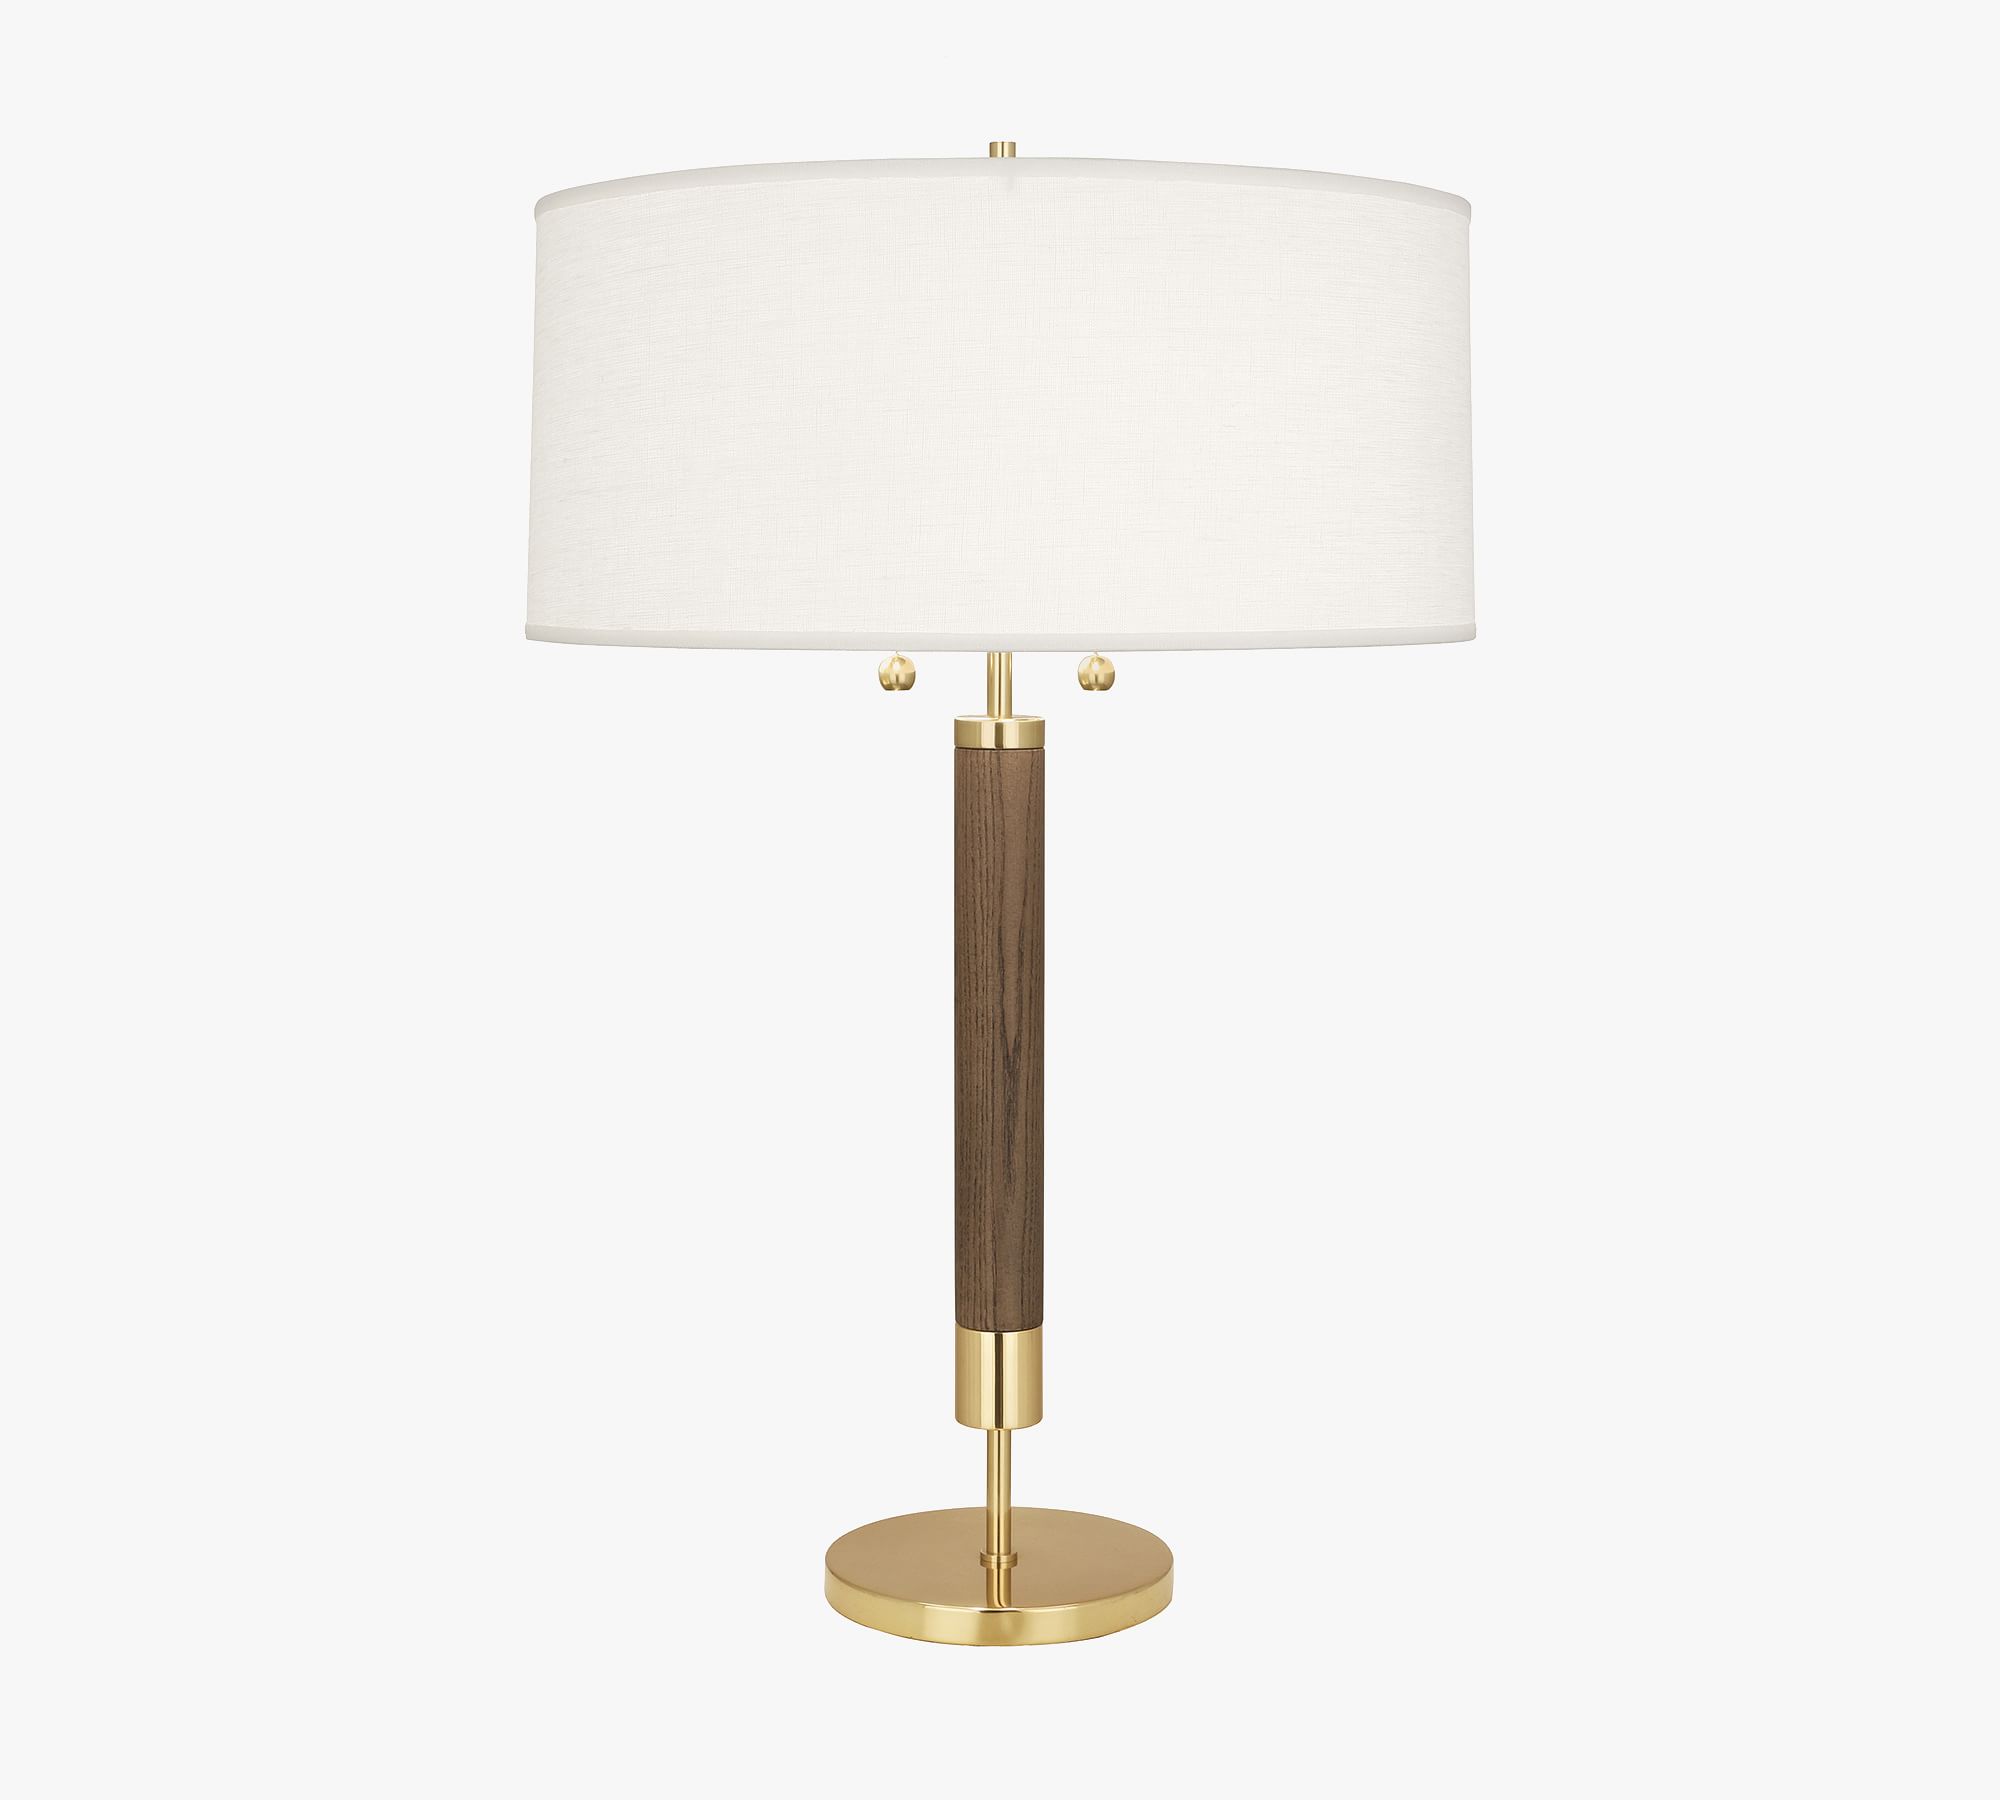 Grant Wood & Metal Table Lamp